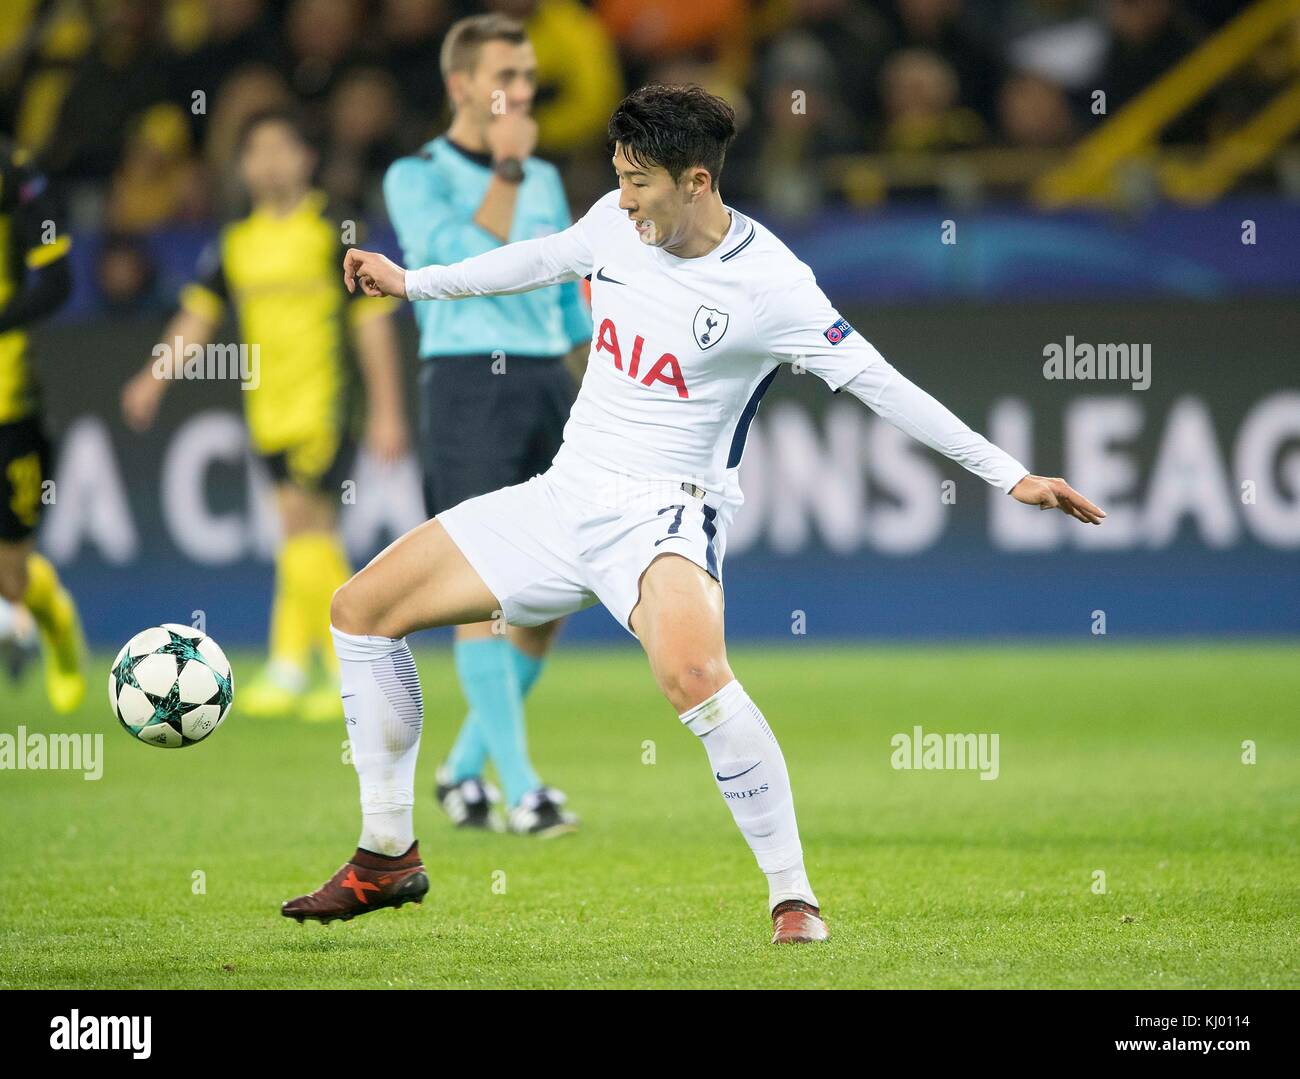 Dortmund, Deutschland. 21st Nov, 2017. Heung-Min SON (Spurs) Aktion,  Fussball Champions League, Vorrunde, 5. Spieltag